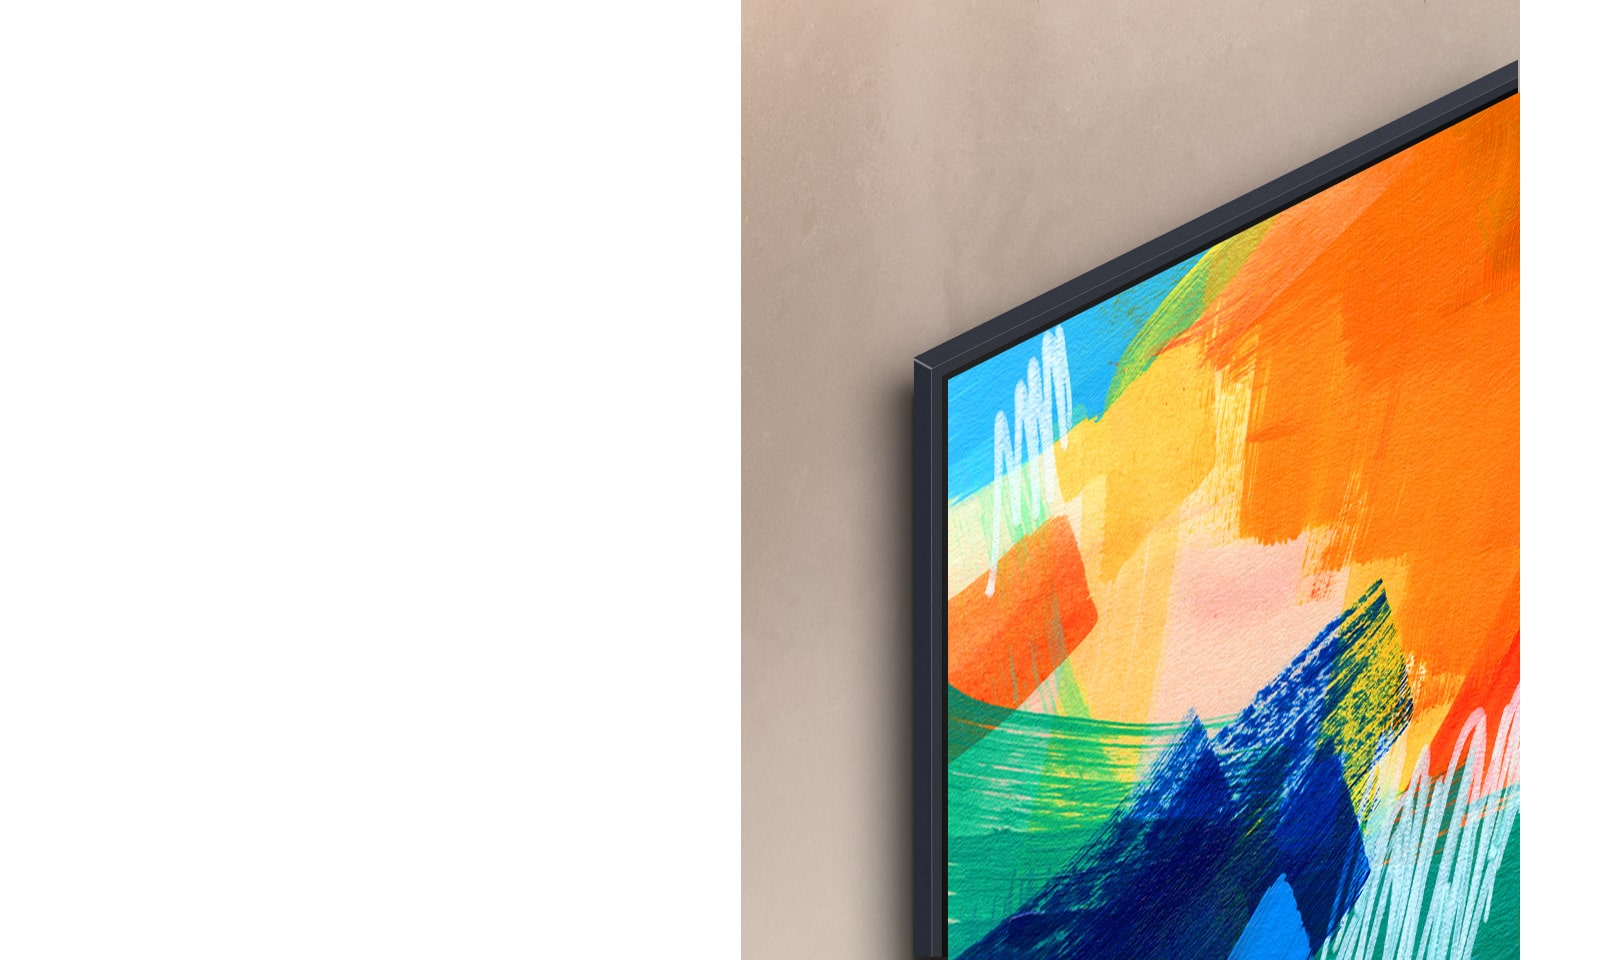 Levý horní roh LG TV, na kterém je zobrazeno různobarevné umělecké dílo, přičemž televizor je připevněn na stěnu s téměř neviditelnou mezerou.